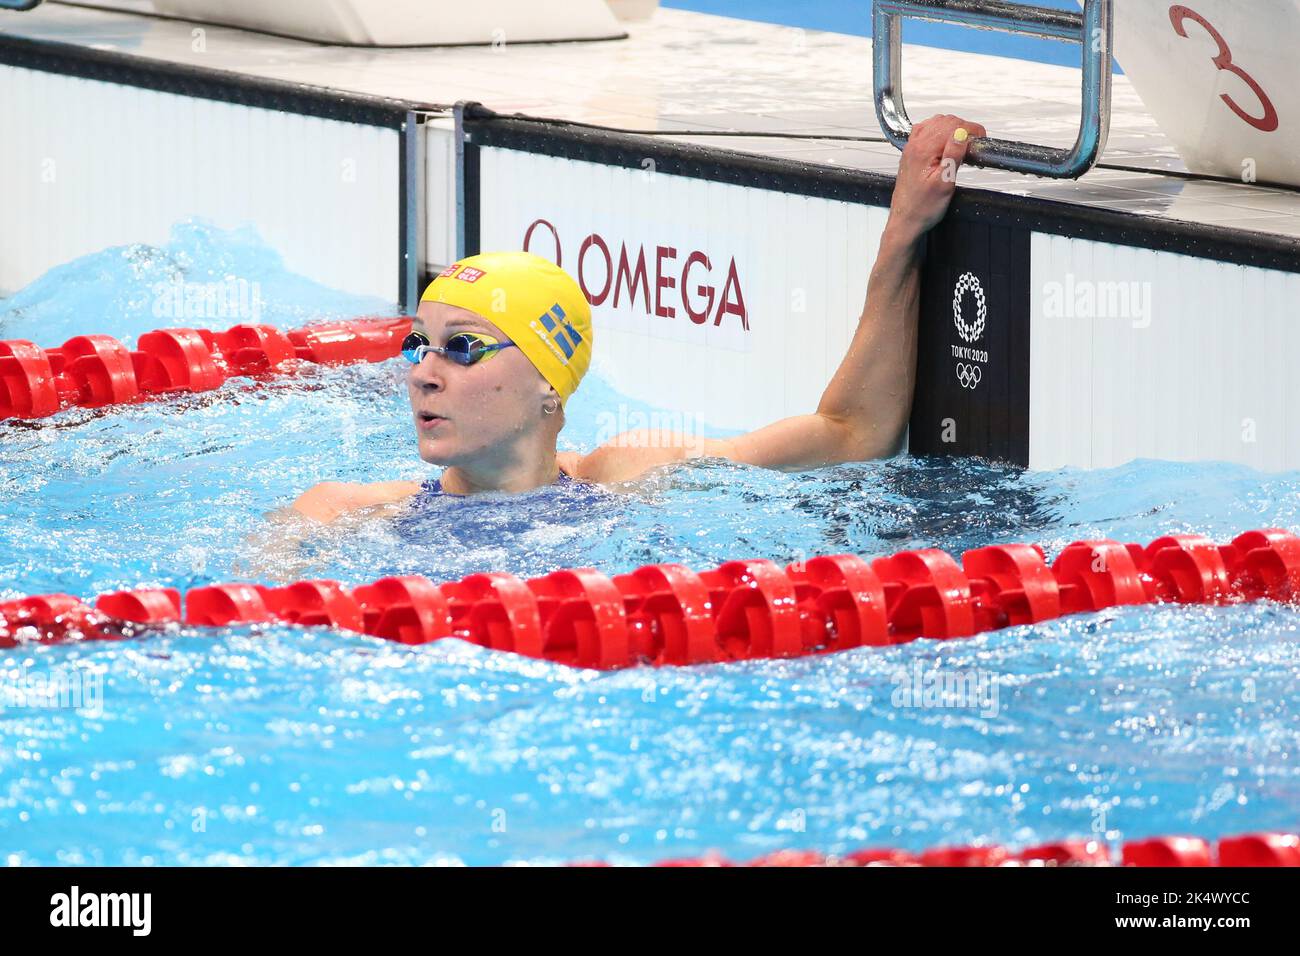 1st AGOSTO 2021 - TOKYO, GIAPPONE: Sarah SJOSTROM di Svezia vince la medaglia d'argento nella finale di Freestyle 50m delle Donne in piscina ai Giochi Olimpici di Tokyo 2020 (Foto: Mickael Chavet/RX) Foto Stock